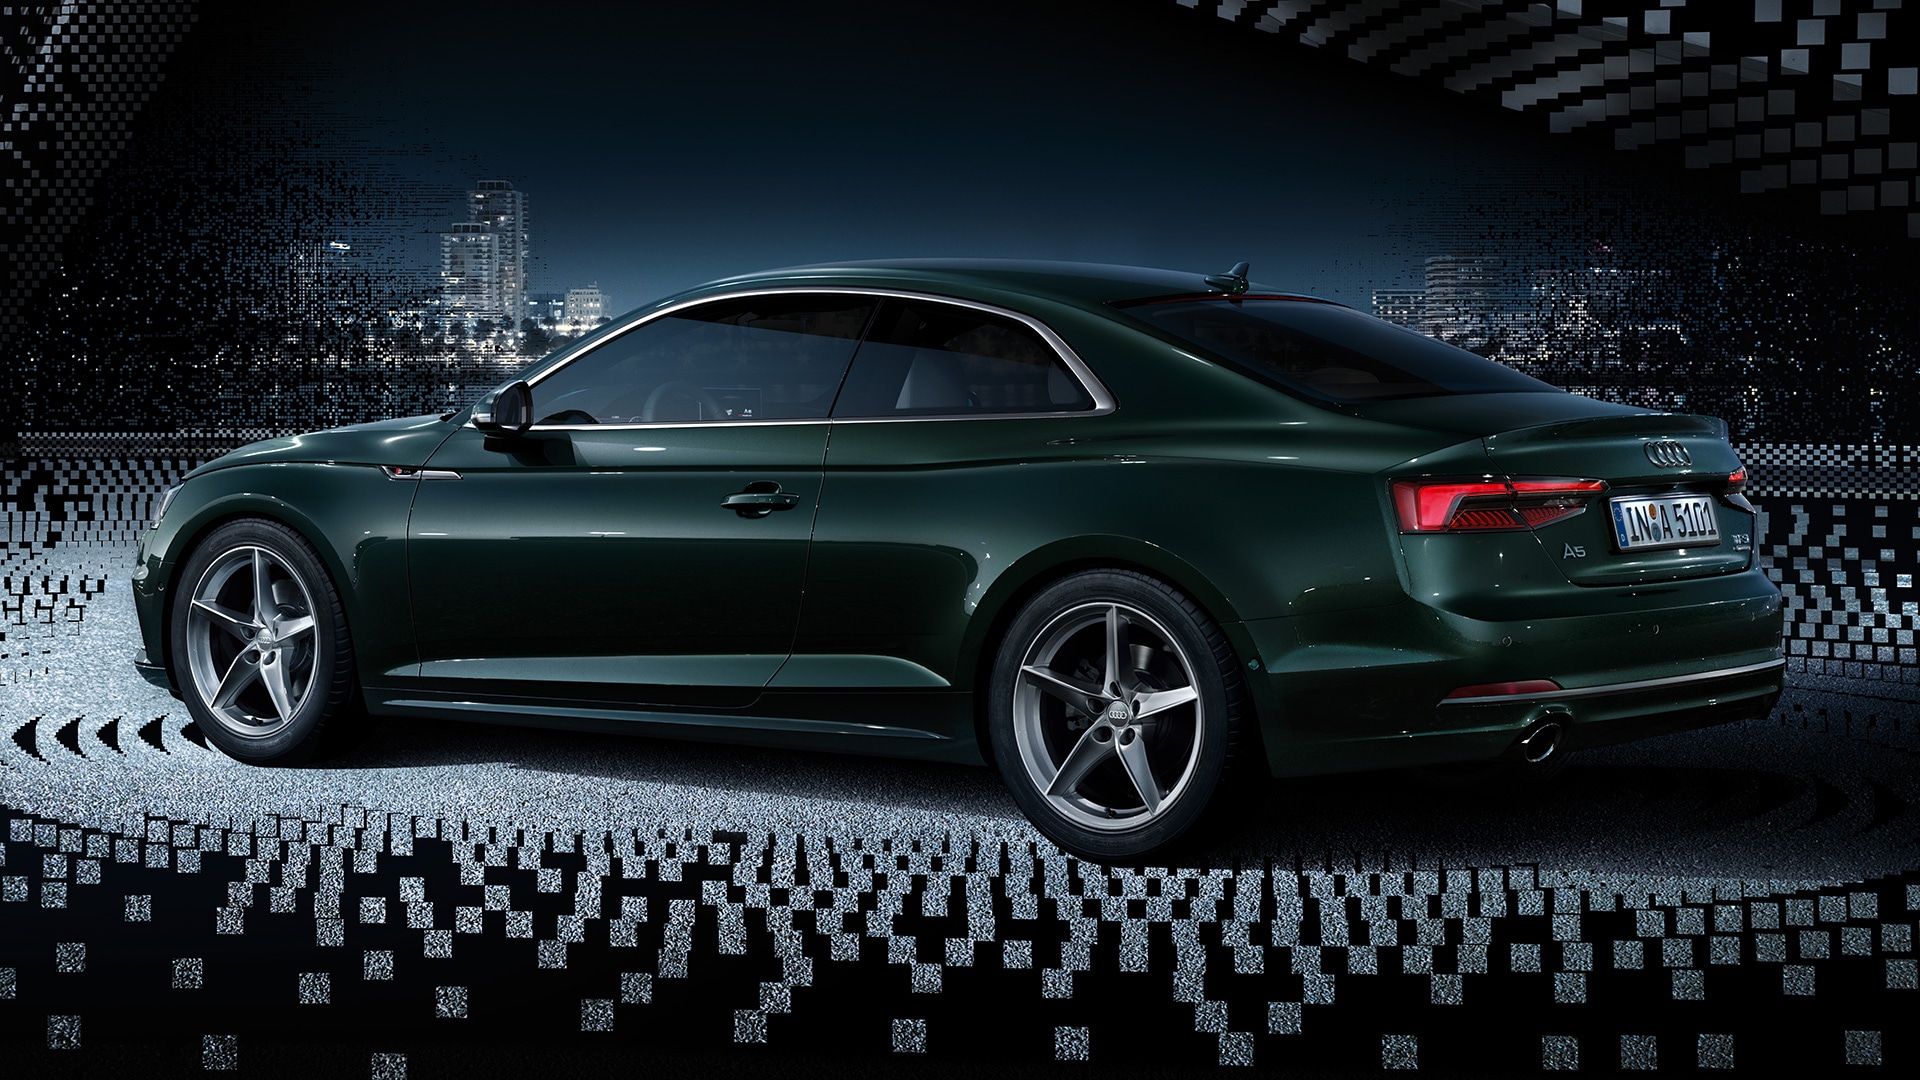 Audi A5 Coupe Rental Rates Dubai